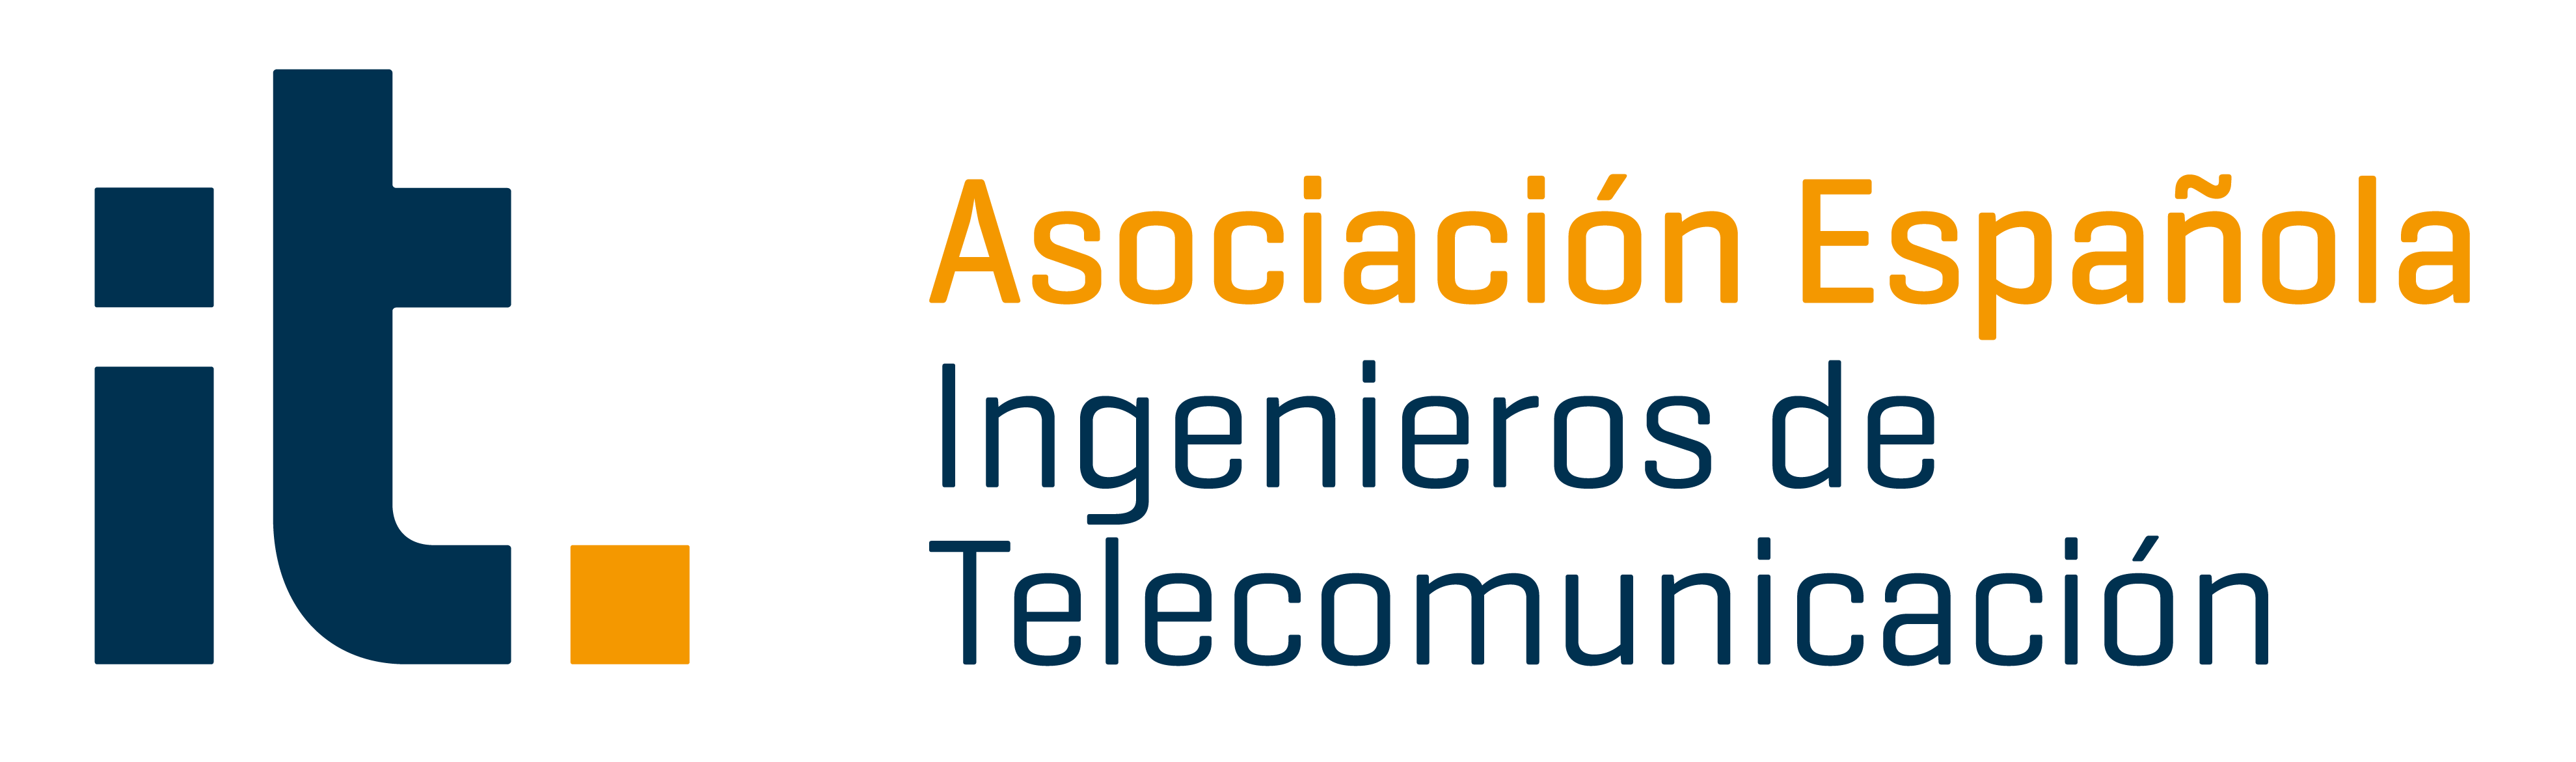 Asociación Española de Ingenieros de Telecomunición